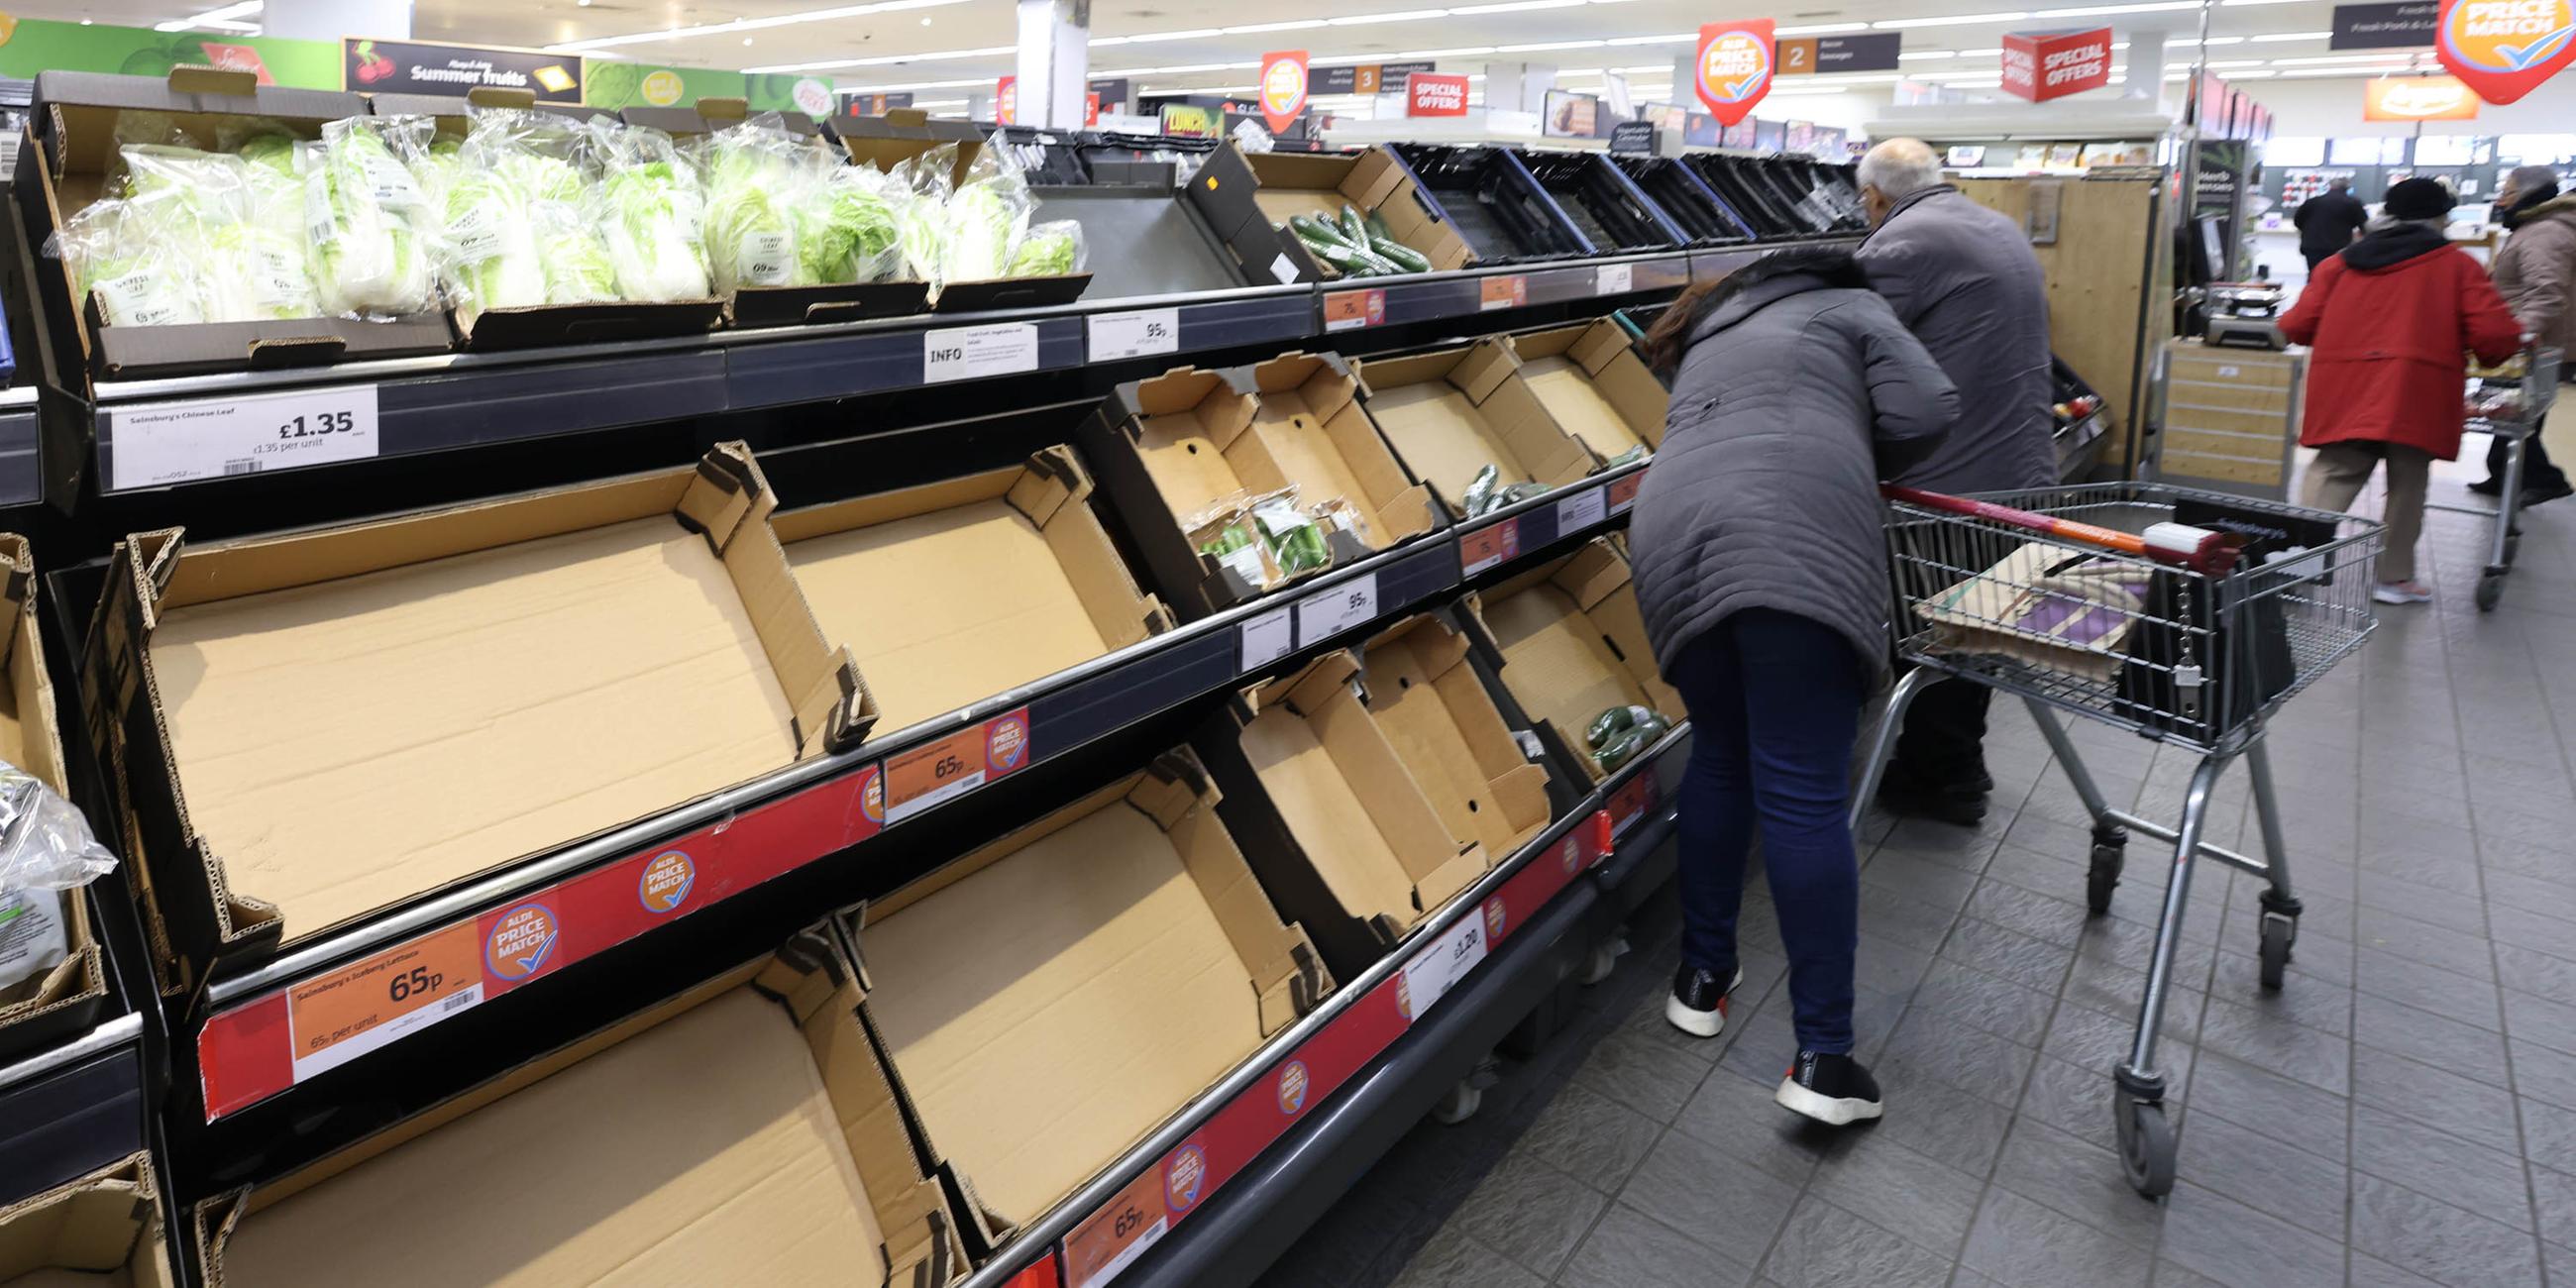 Leere Regale in der Gemüseabteilung eines Supermarkts in London